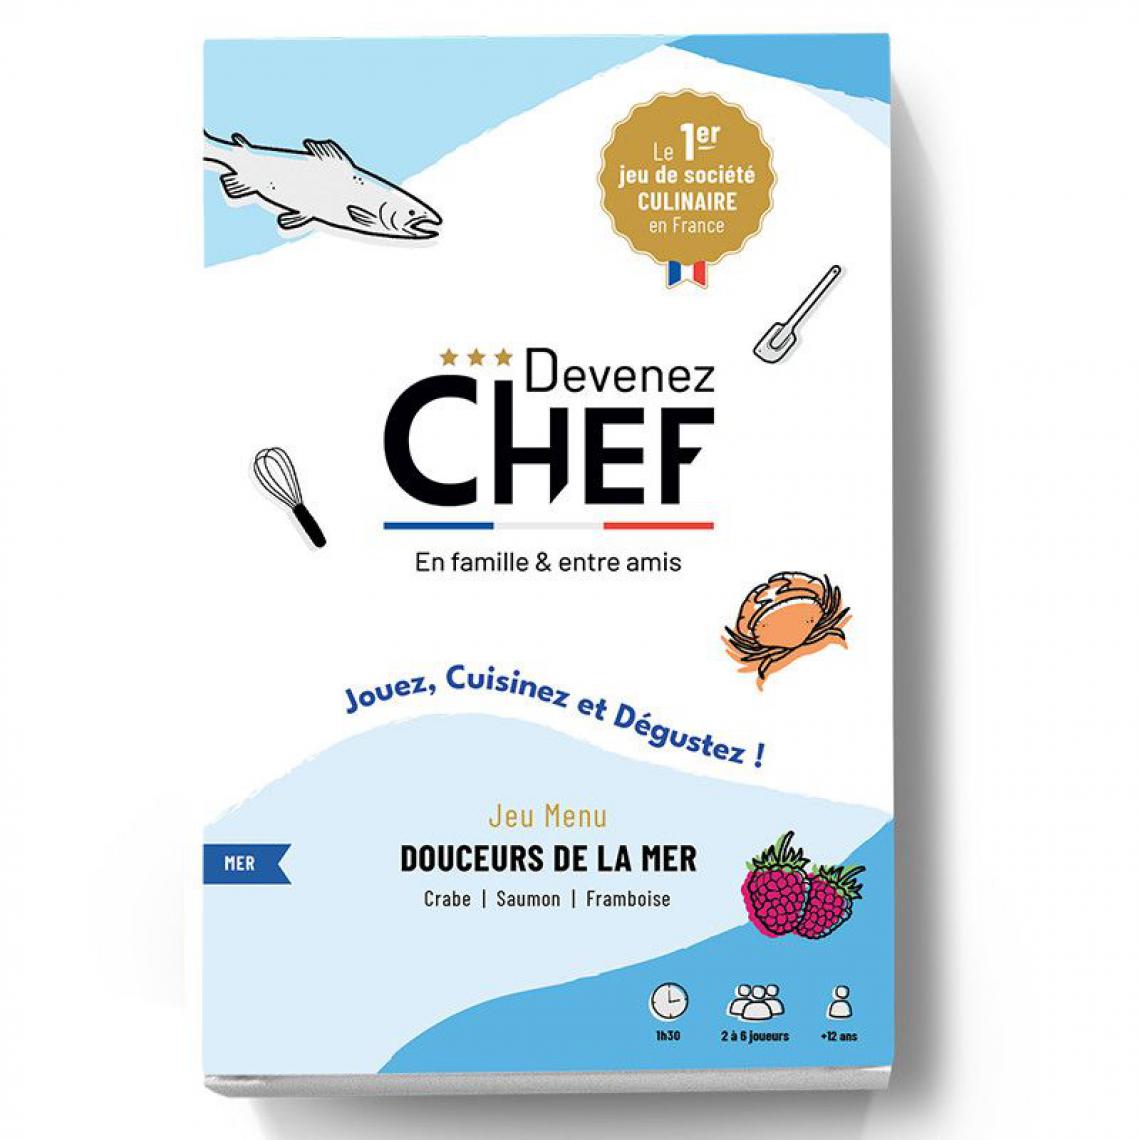 Sans Marque - Devenez Chef - Jeu de société culinaire - Menu Douceurs de la mer - Les grands classiques